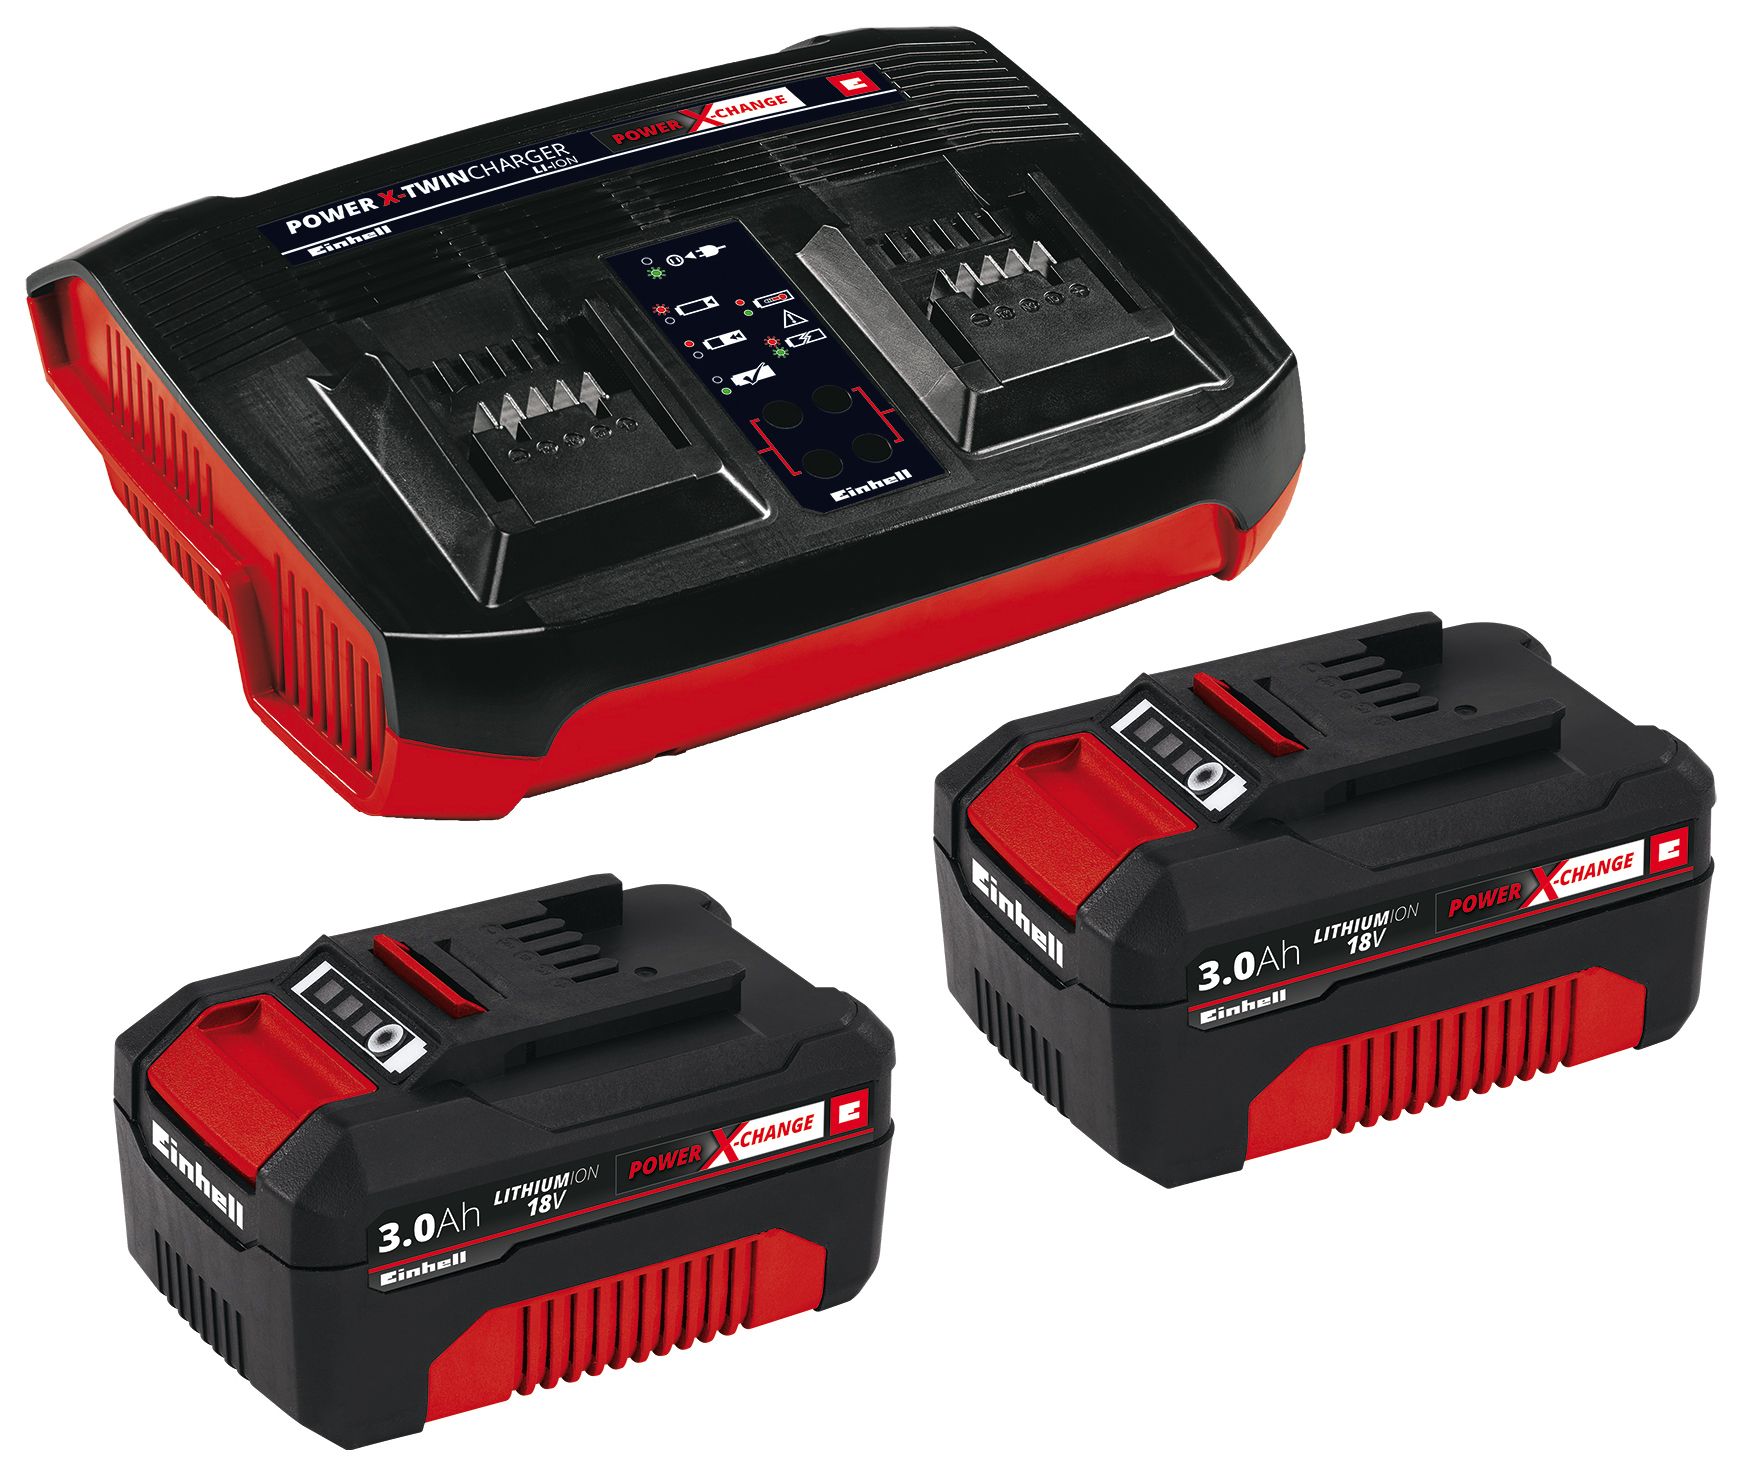 Image of Einhell Power X-Change 3.0Ah Battery Starter Kit